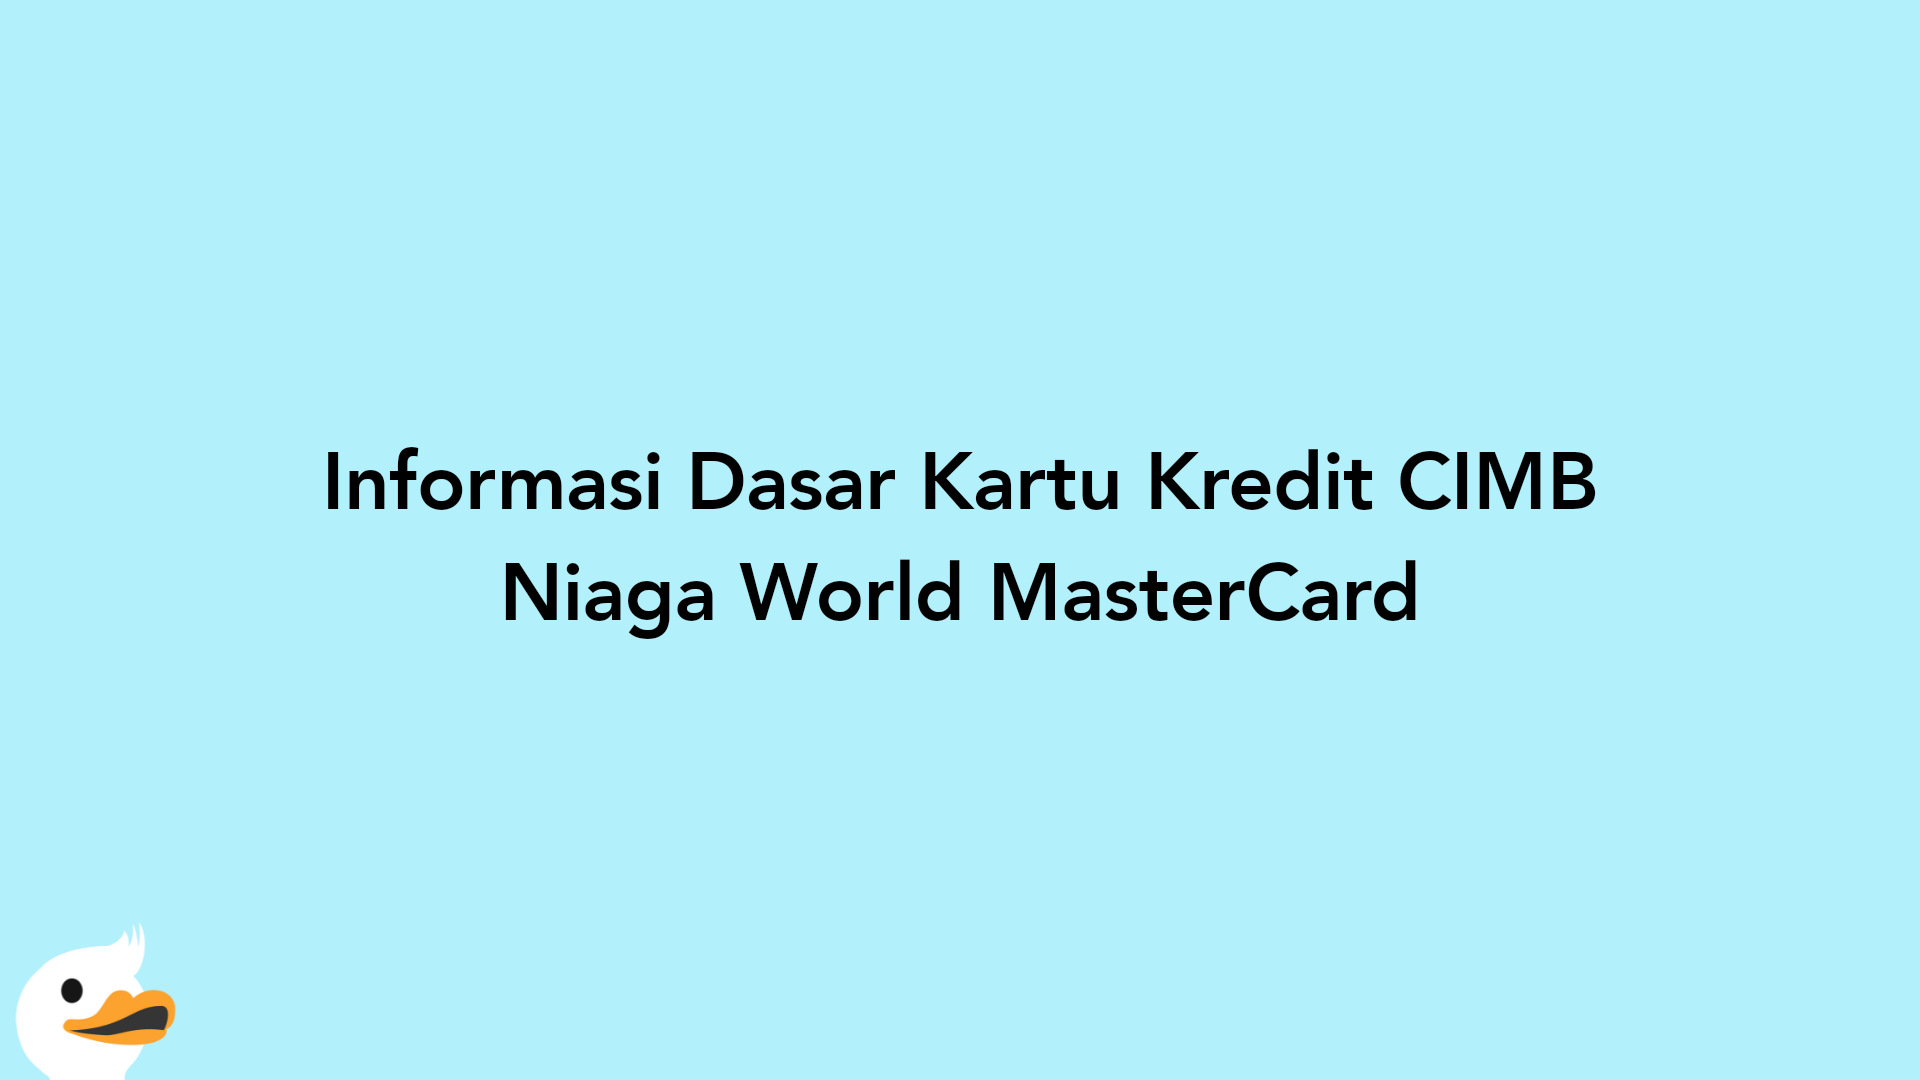 Informasi Dasar Kartu Kredit CIMB Niaga World MasterCard